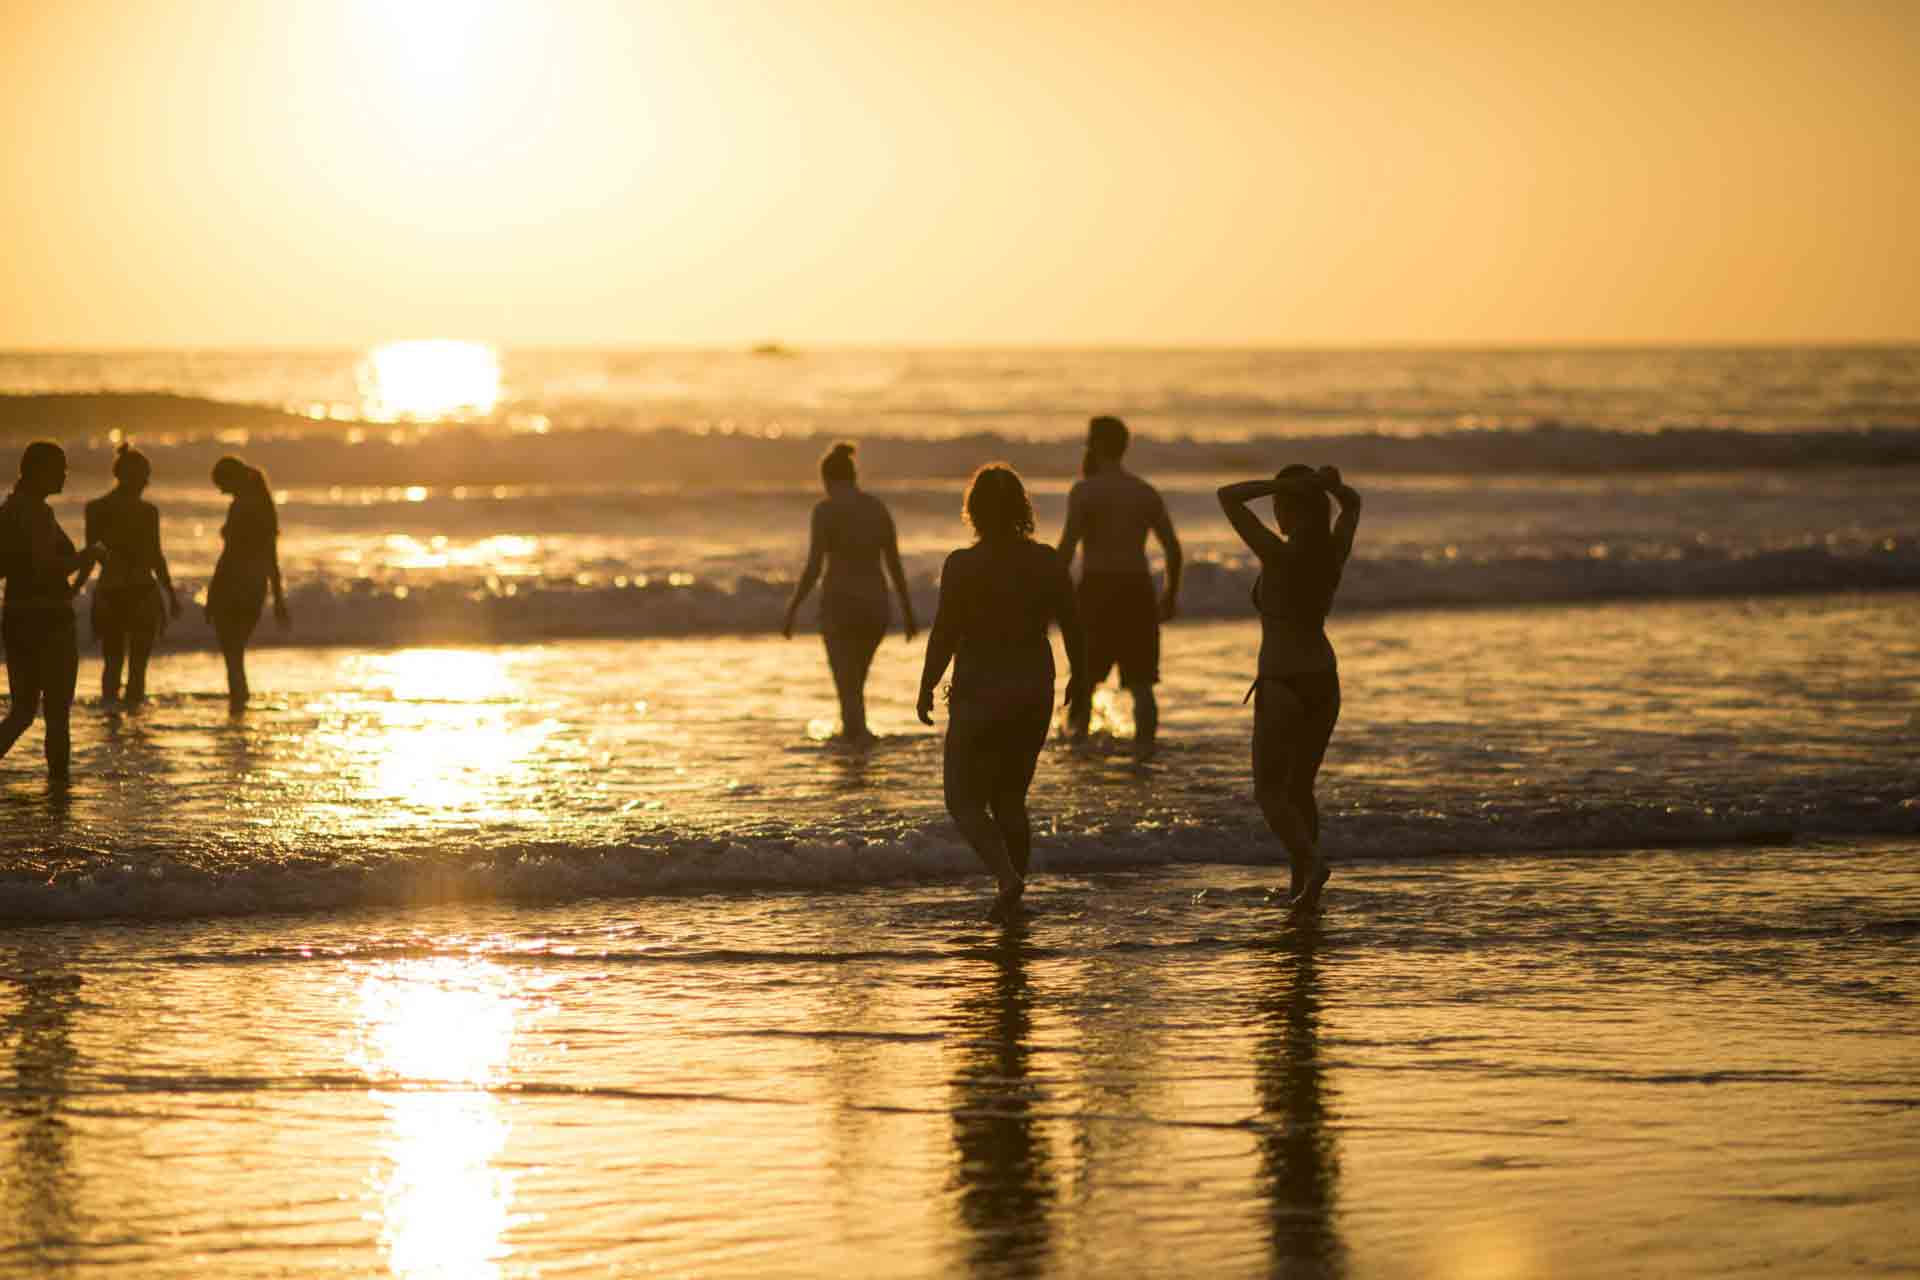 7 personnes sur une plage au coucher de soleil. le soleil est reflété sur l'eau donnant une image à couper le souffle.